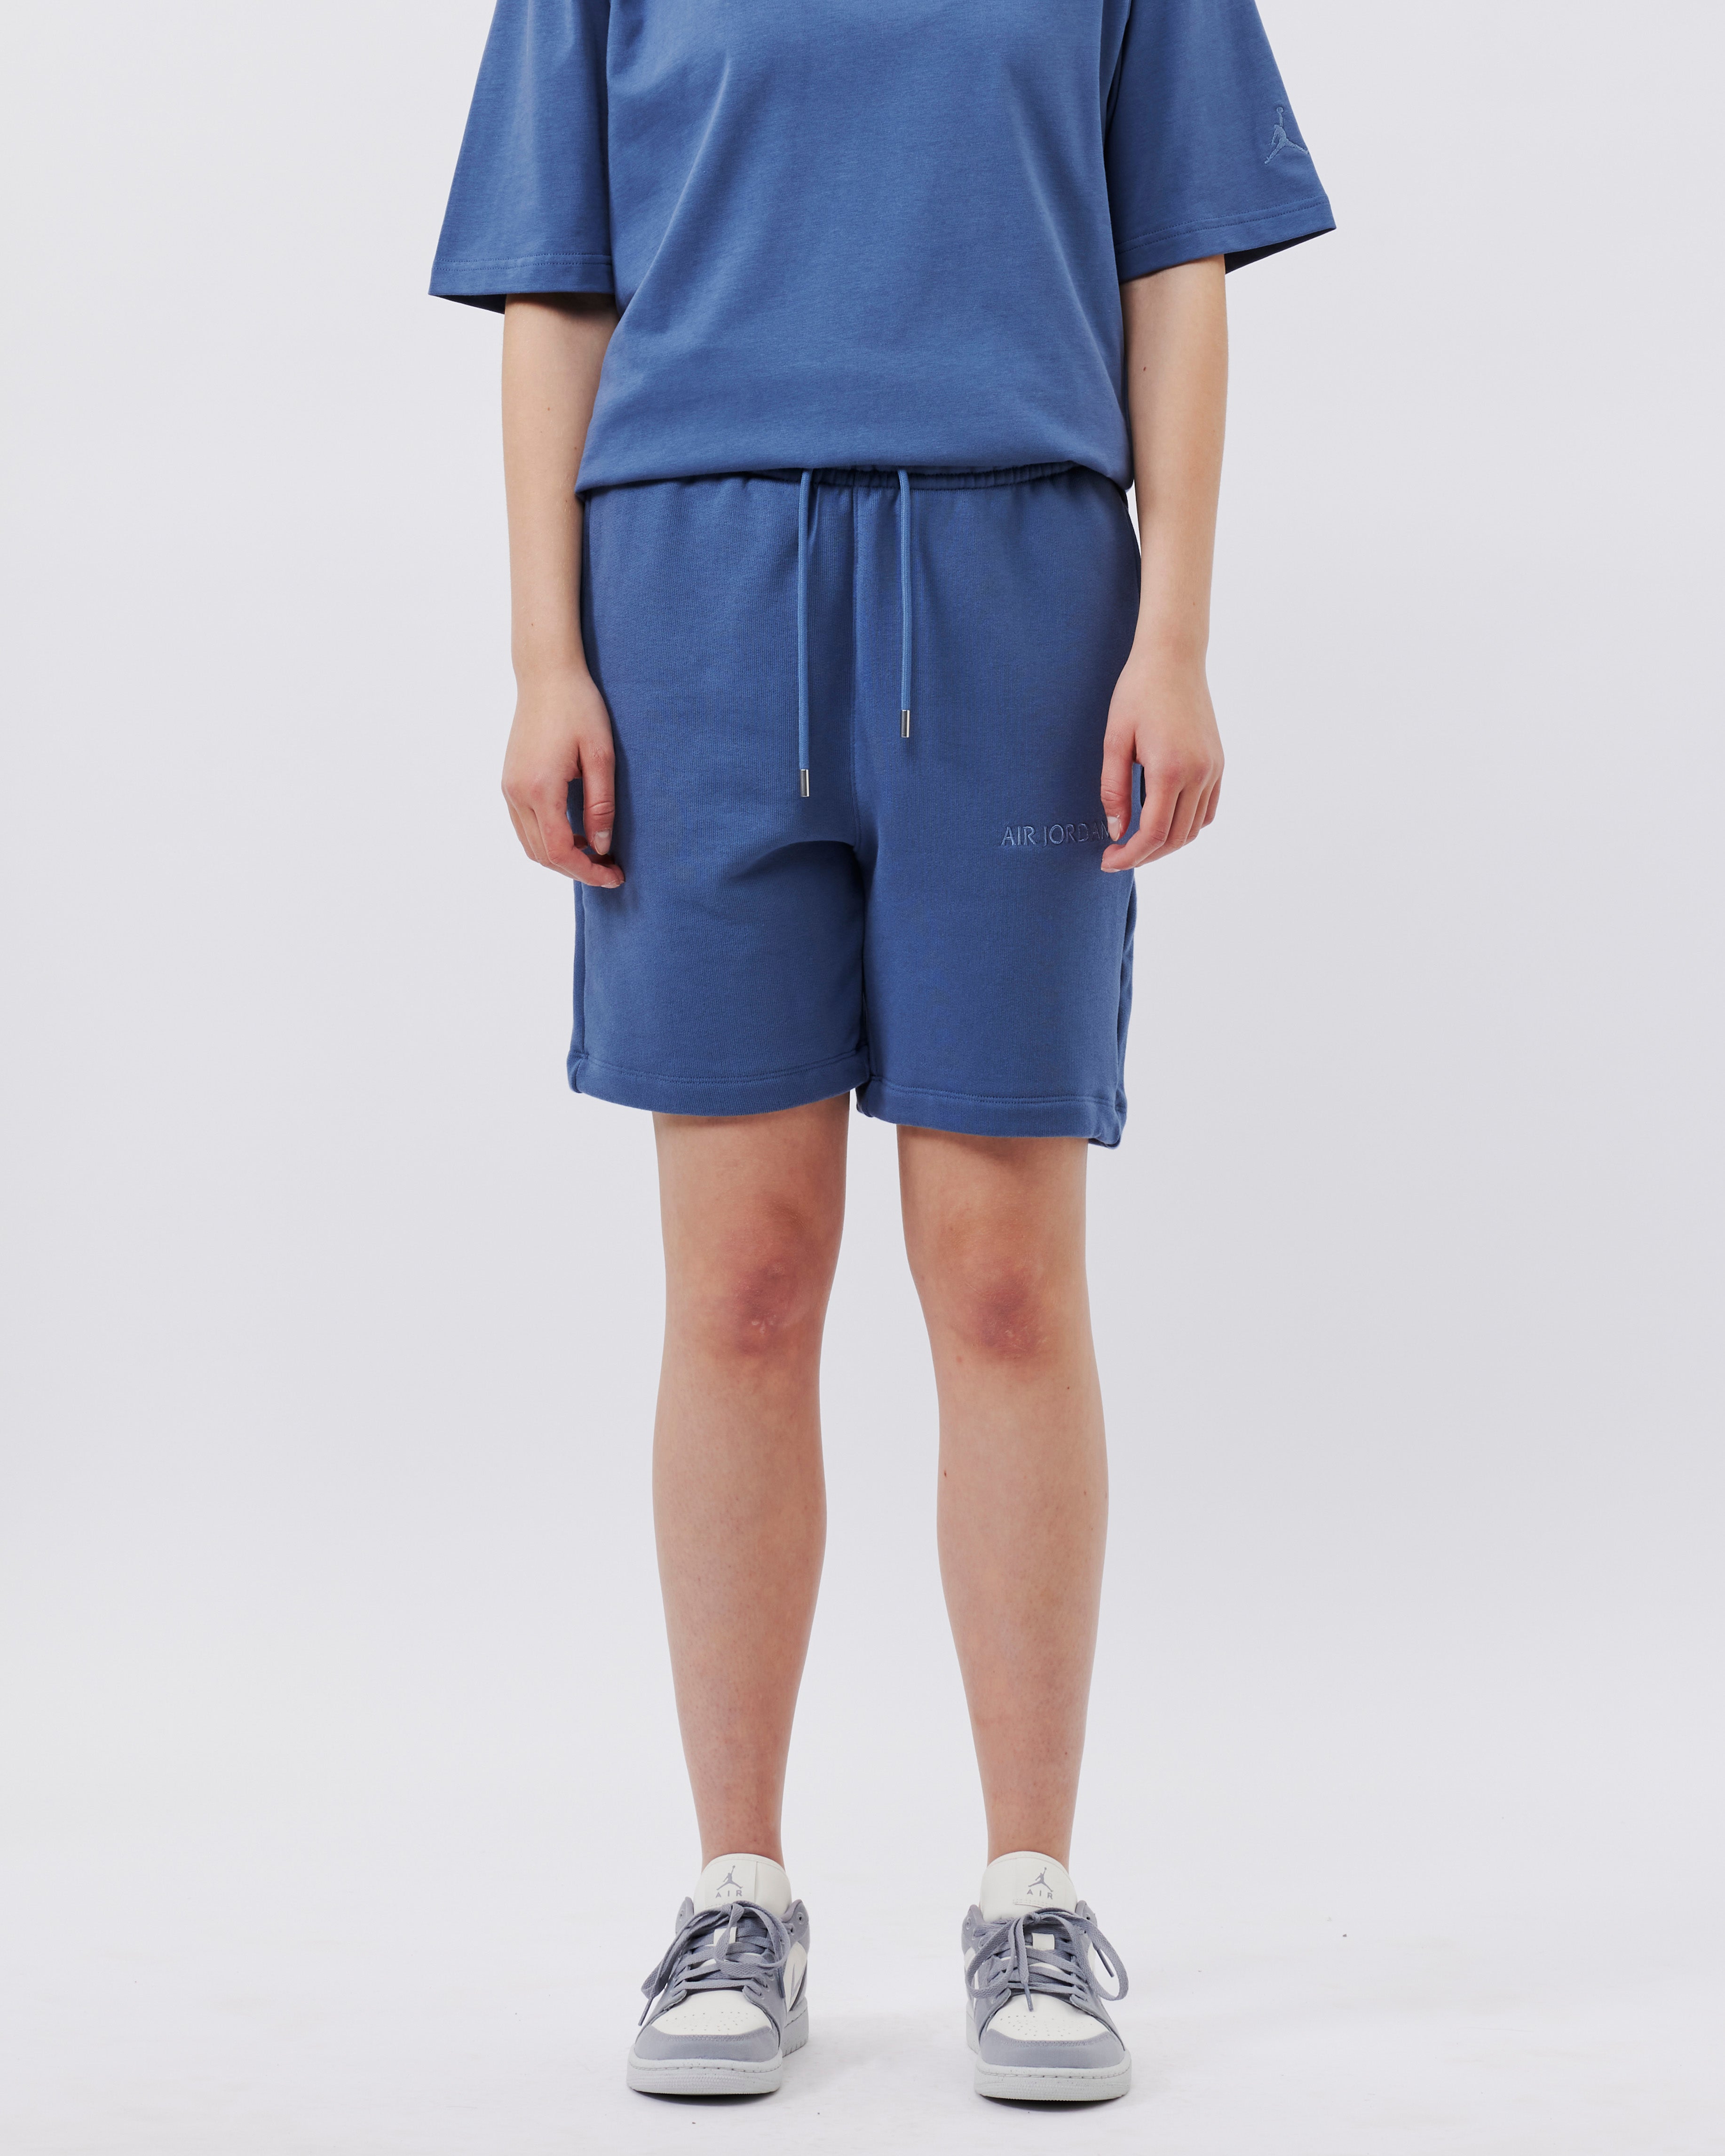 Jordan Brand Air Jordan Fleece Shorts DIFFUSED BLUE FJ0700-491